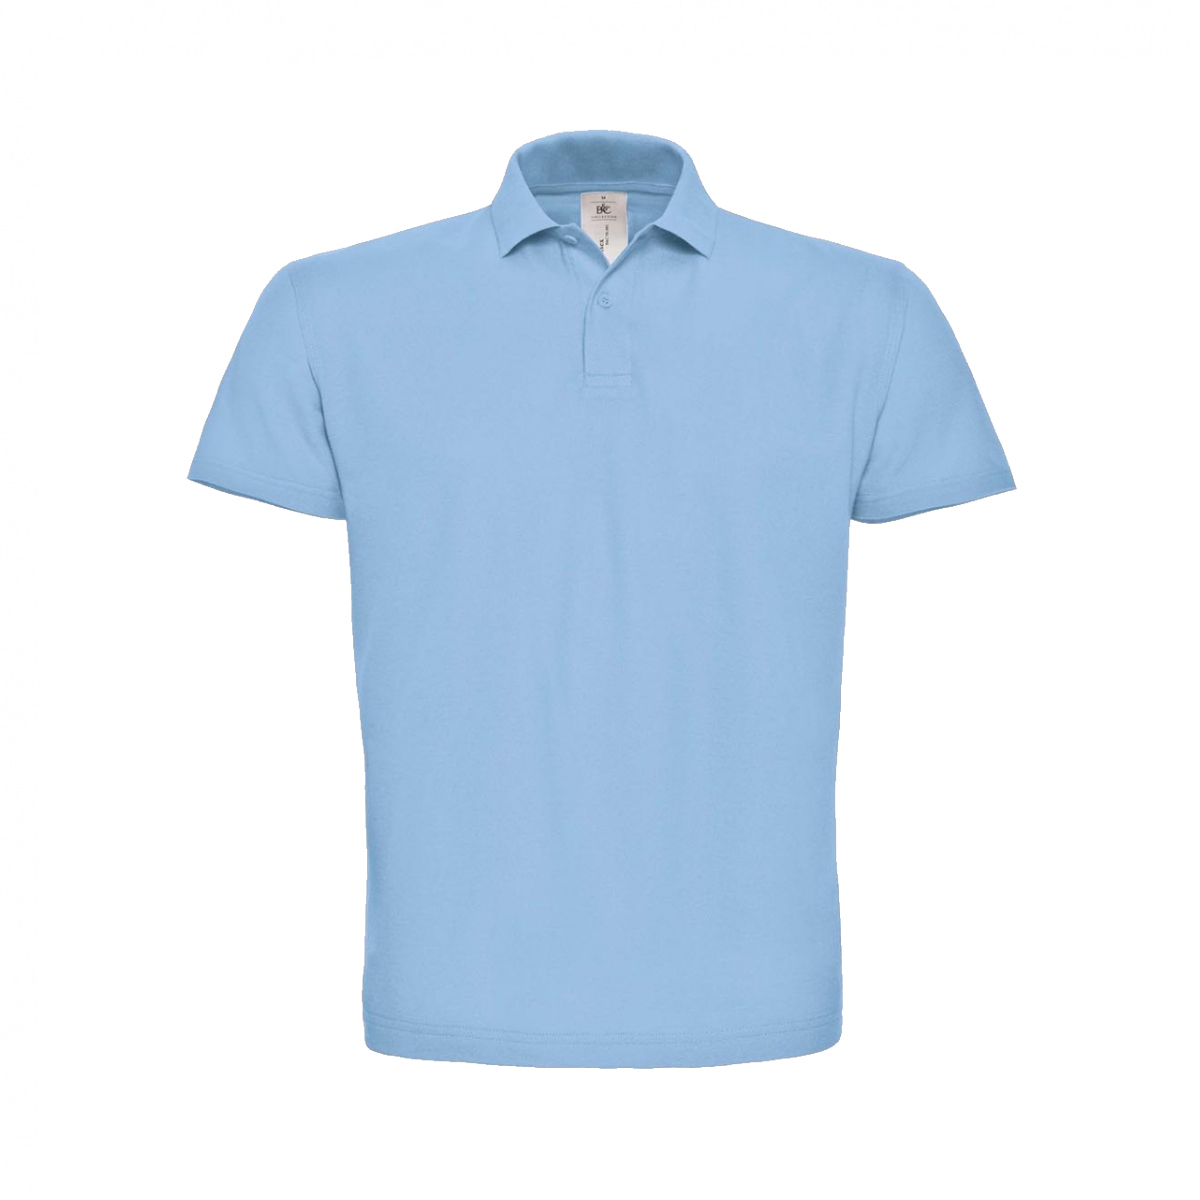 Unisex Poloshirts bedrucken ❤️ Hellblau in M